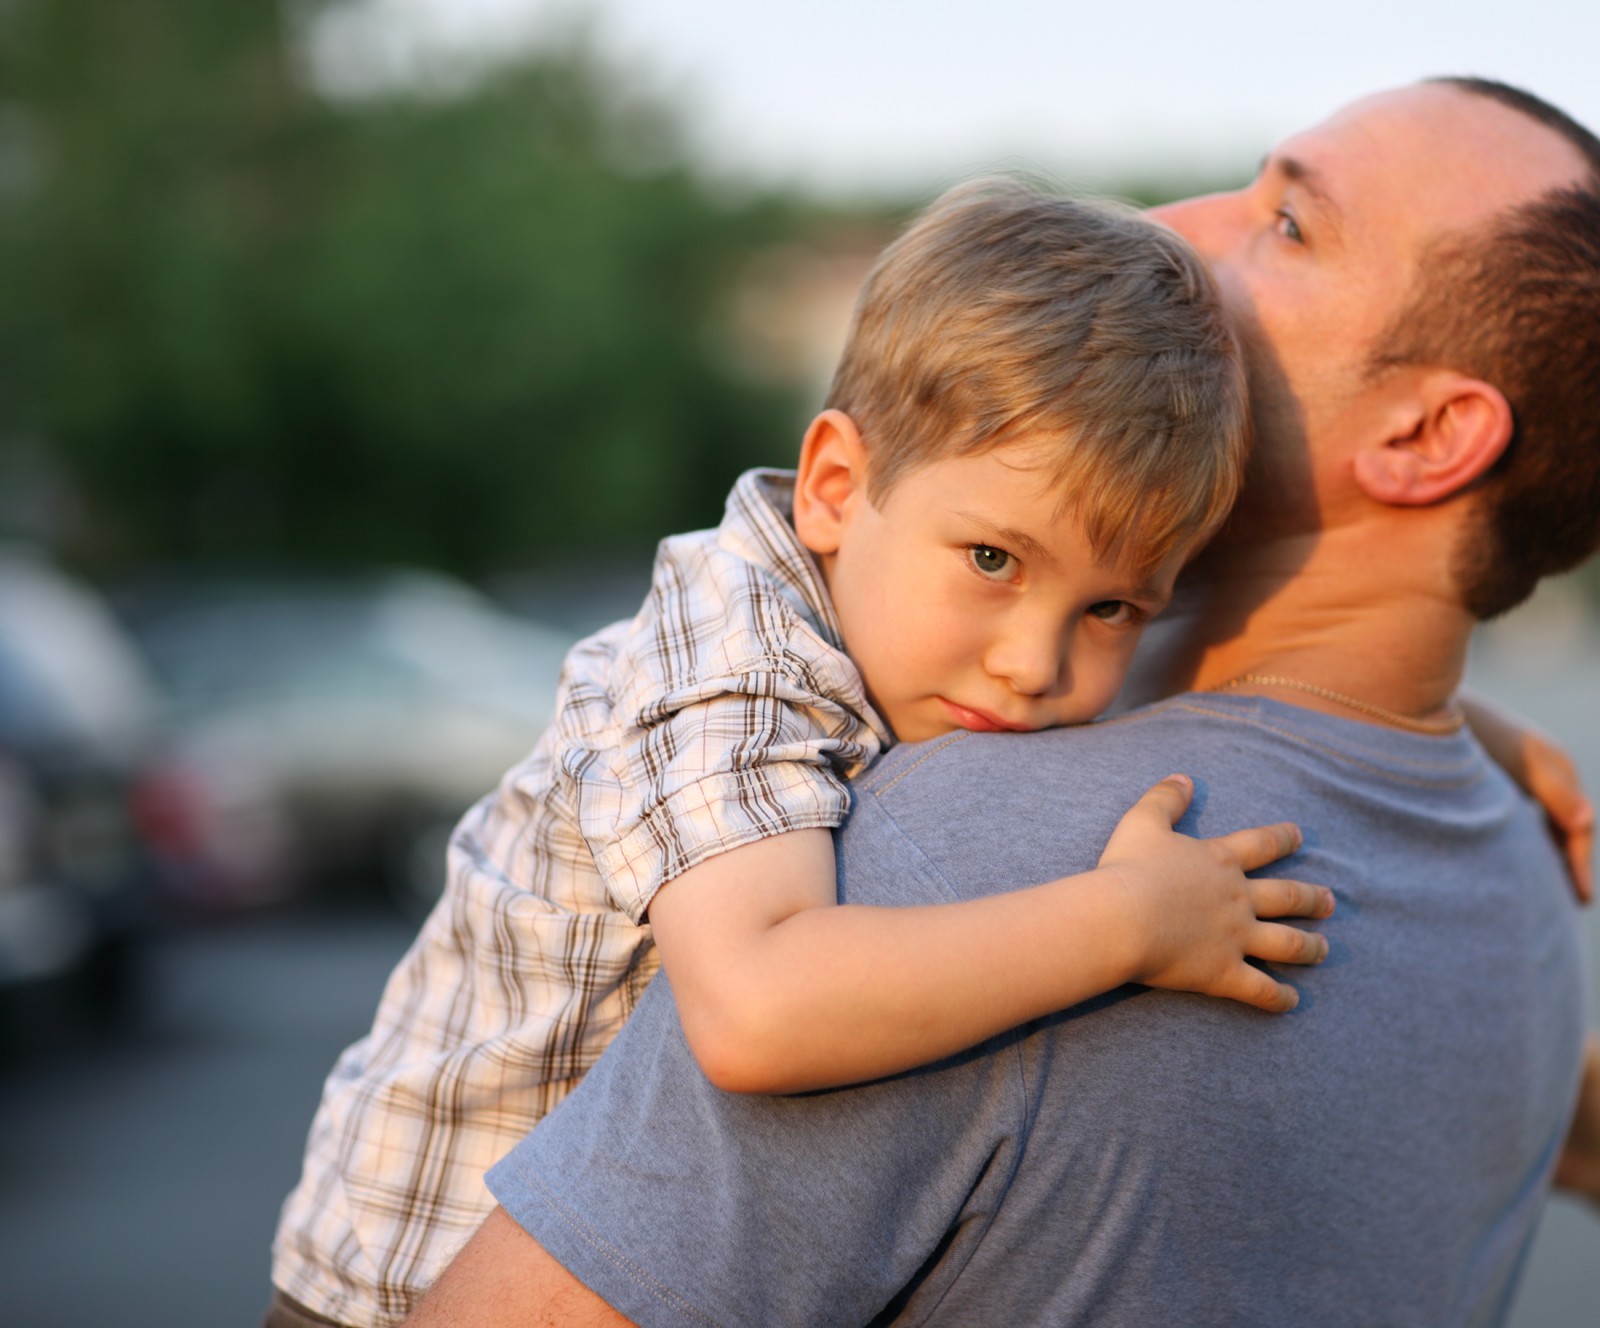 Los hijos necesitan saber de los sentimientos de los padres | Edúkame